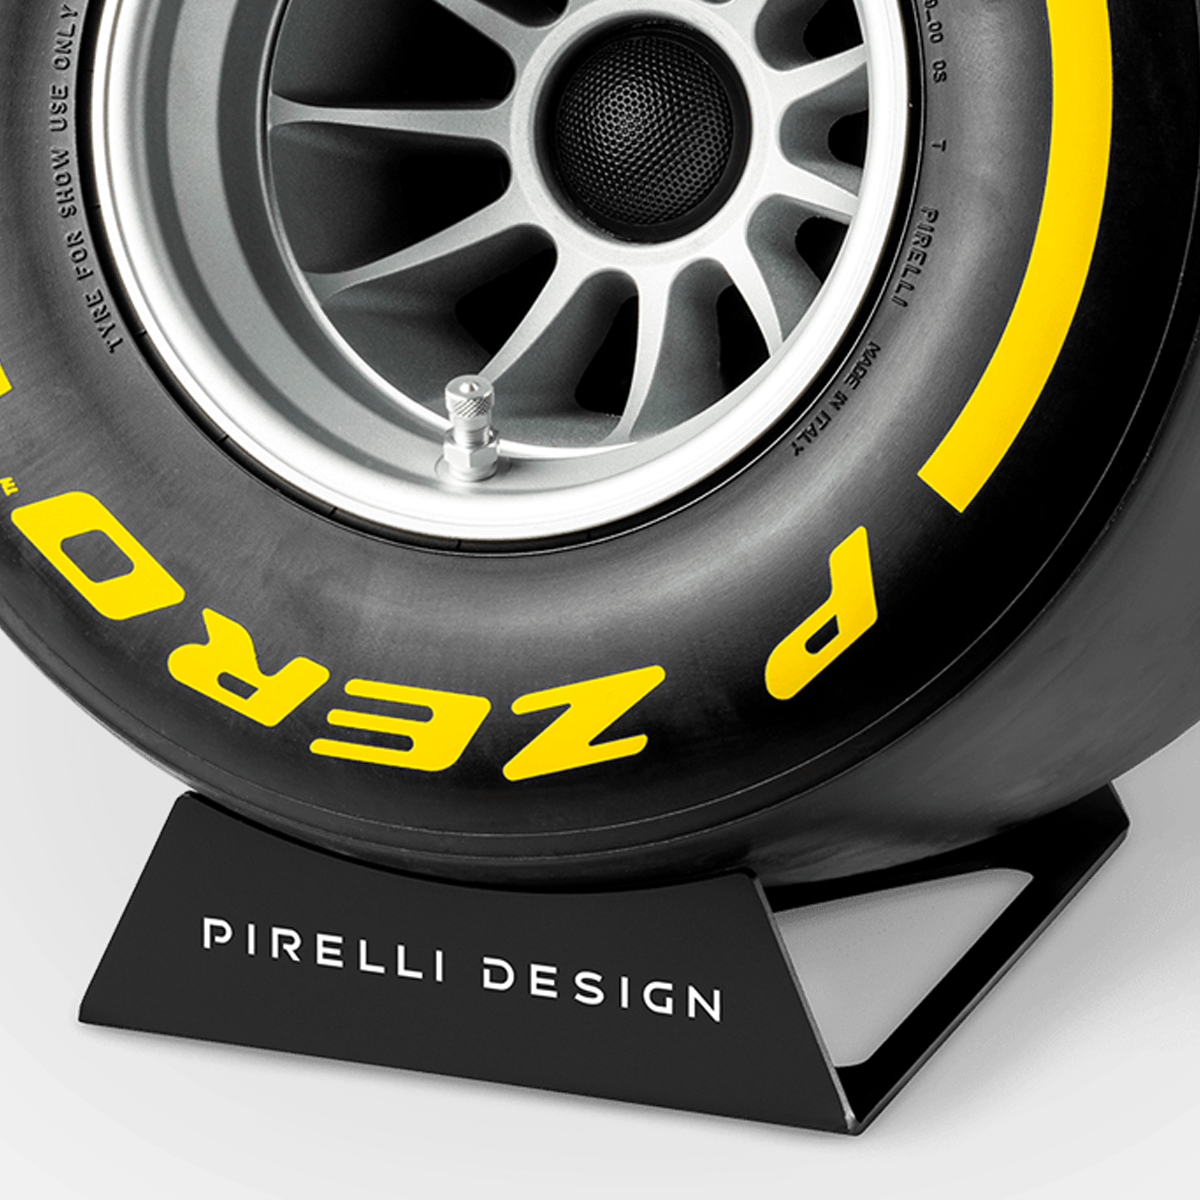 Pirelli P ZERO™ impianto stereo di design colore giallo